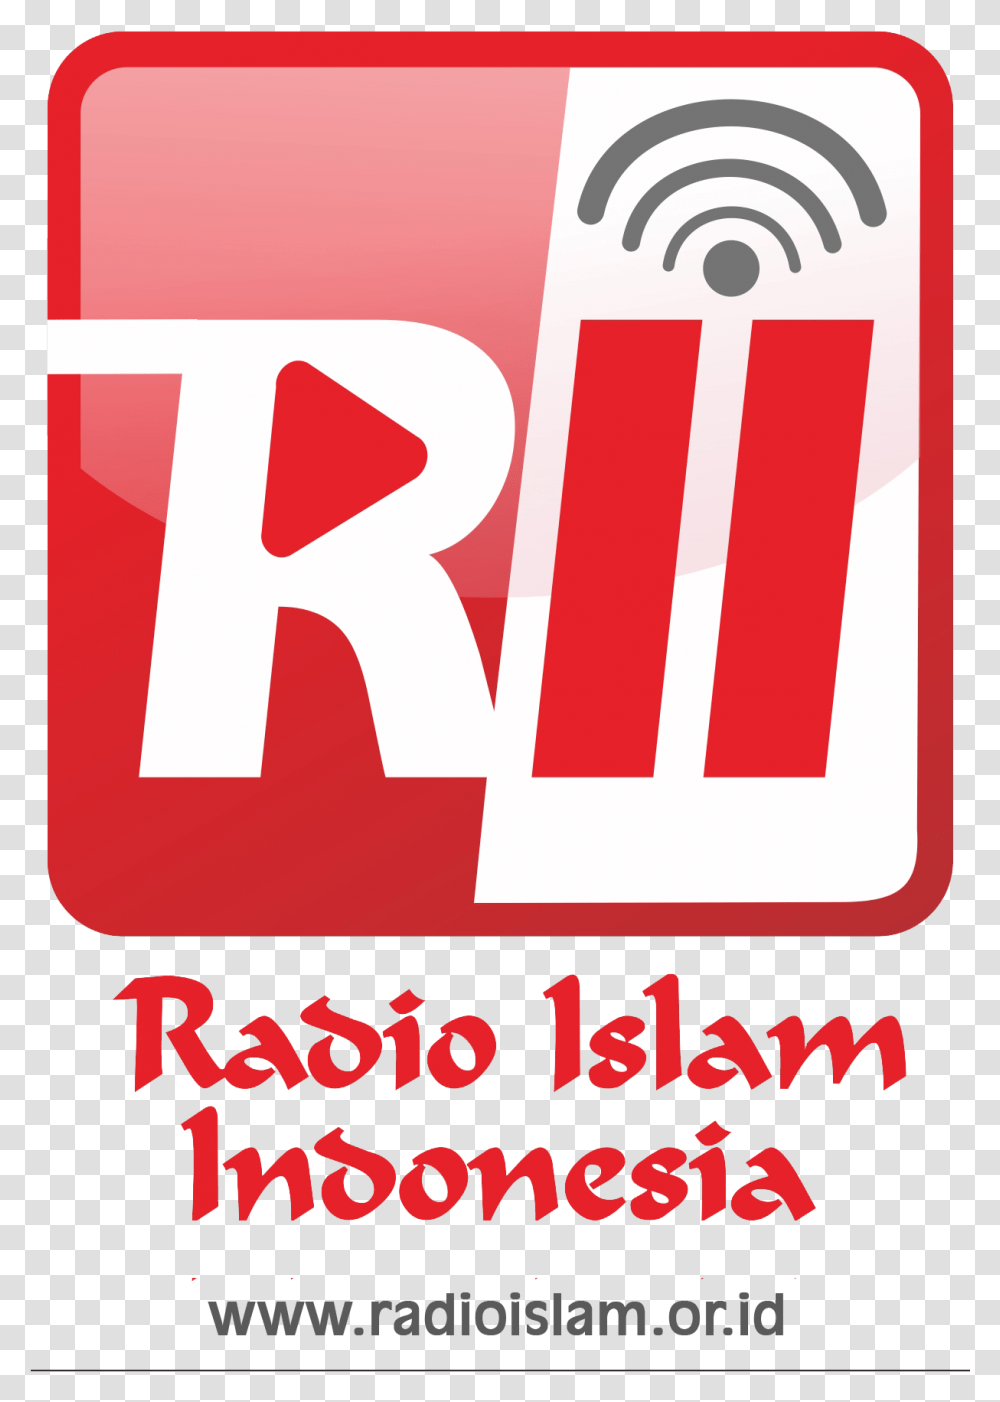 Radio Islam Indonesia, Number, Alphabet Transparent Png